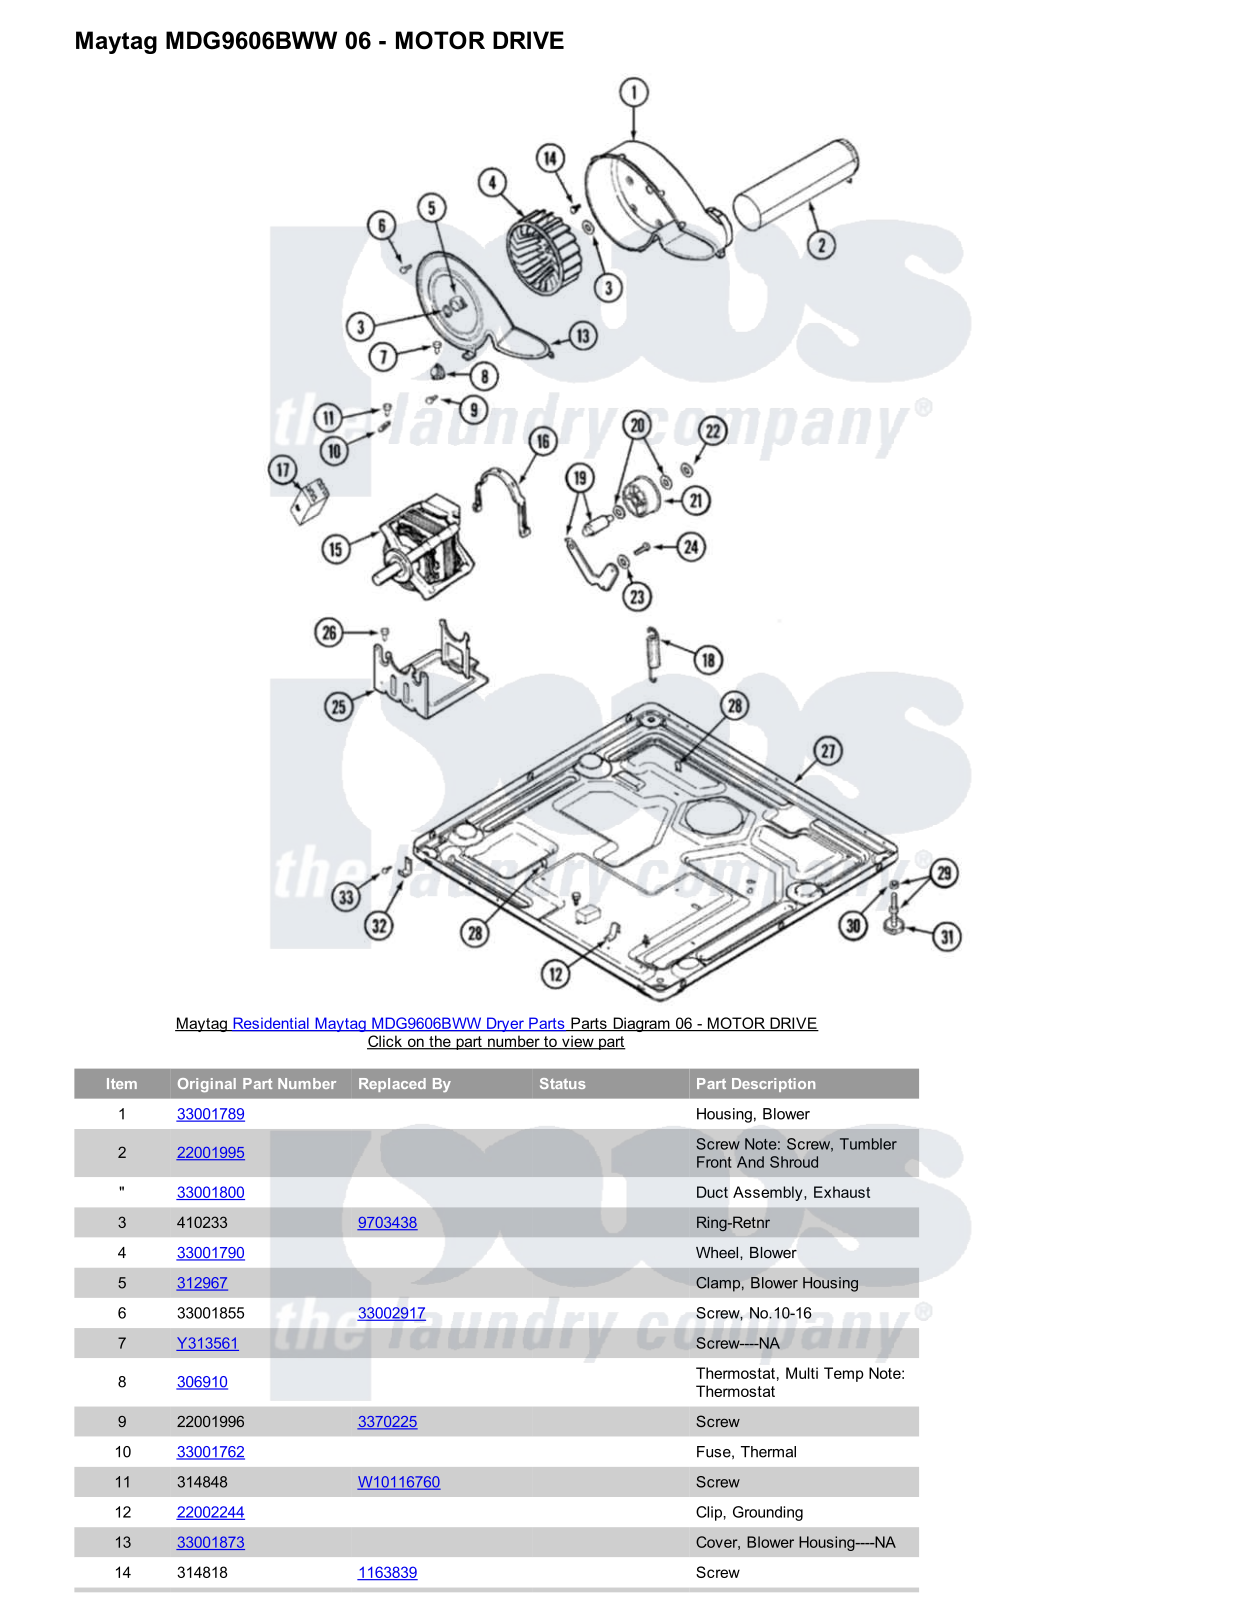 Maytag MDG9606BWW Parts Diagram